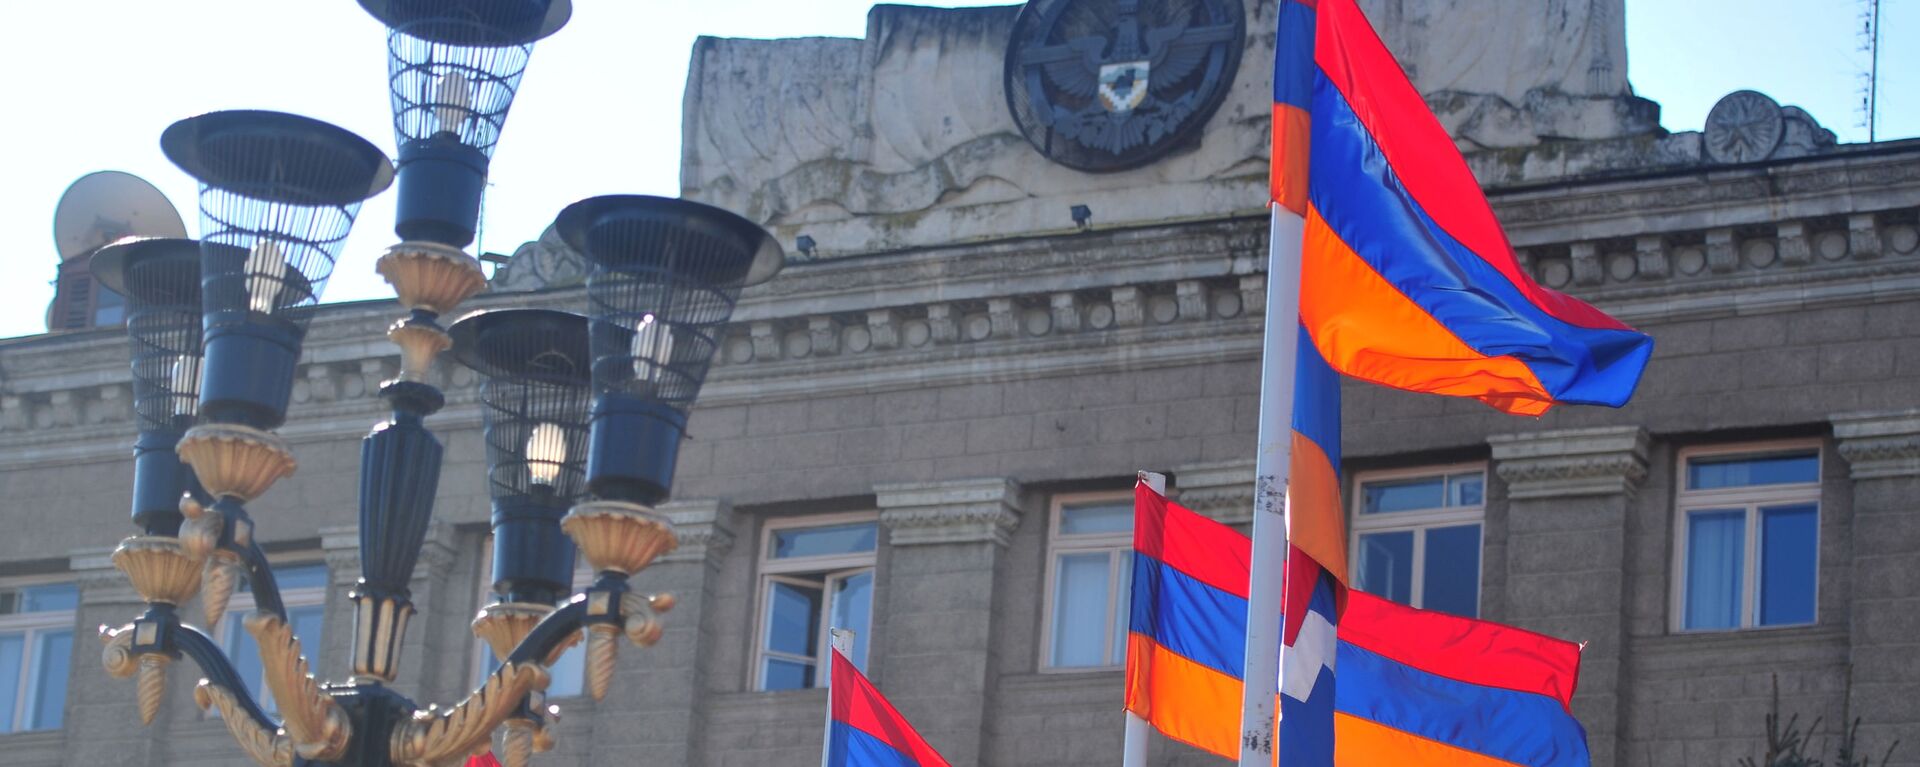 Zastave ispred predsedničke palate u Stepanakertu u Nagorno-Karabahu - Sputnik Srbija, 1920, 18.10.2020